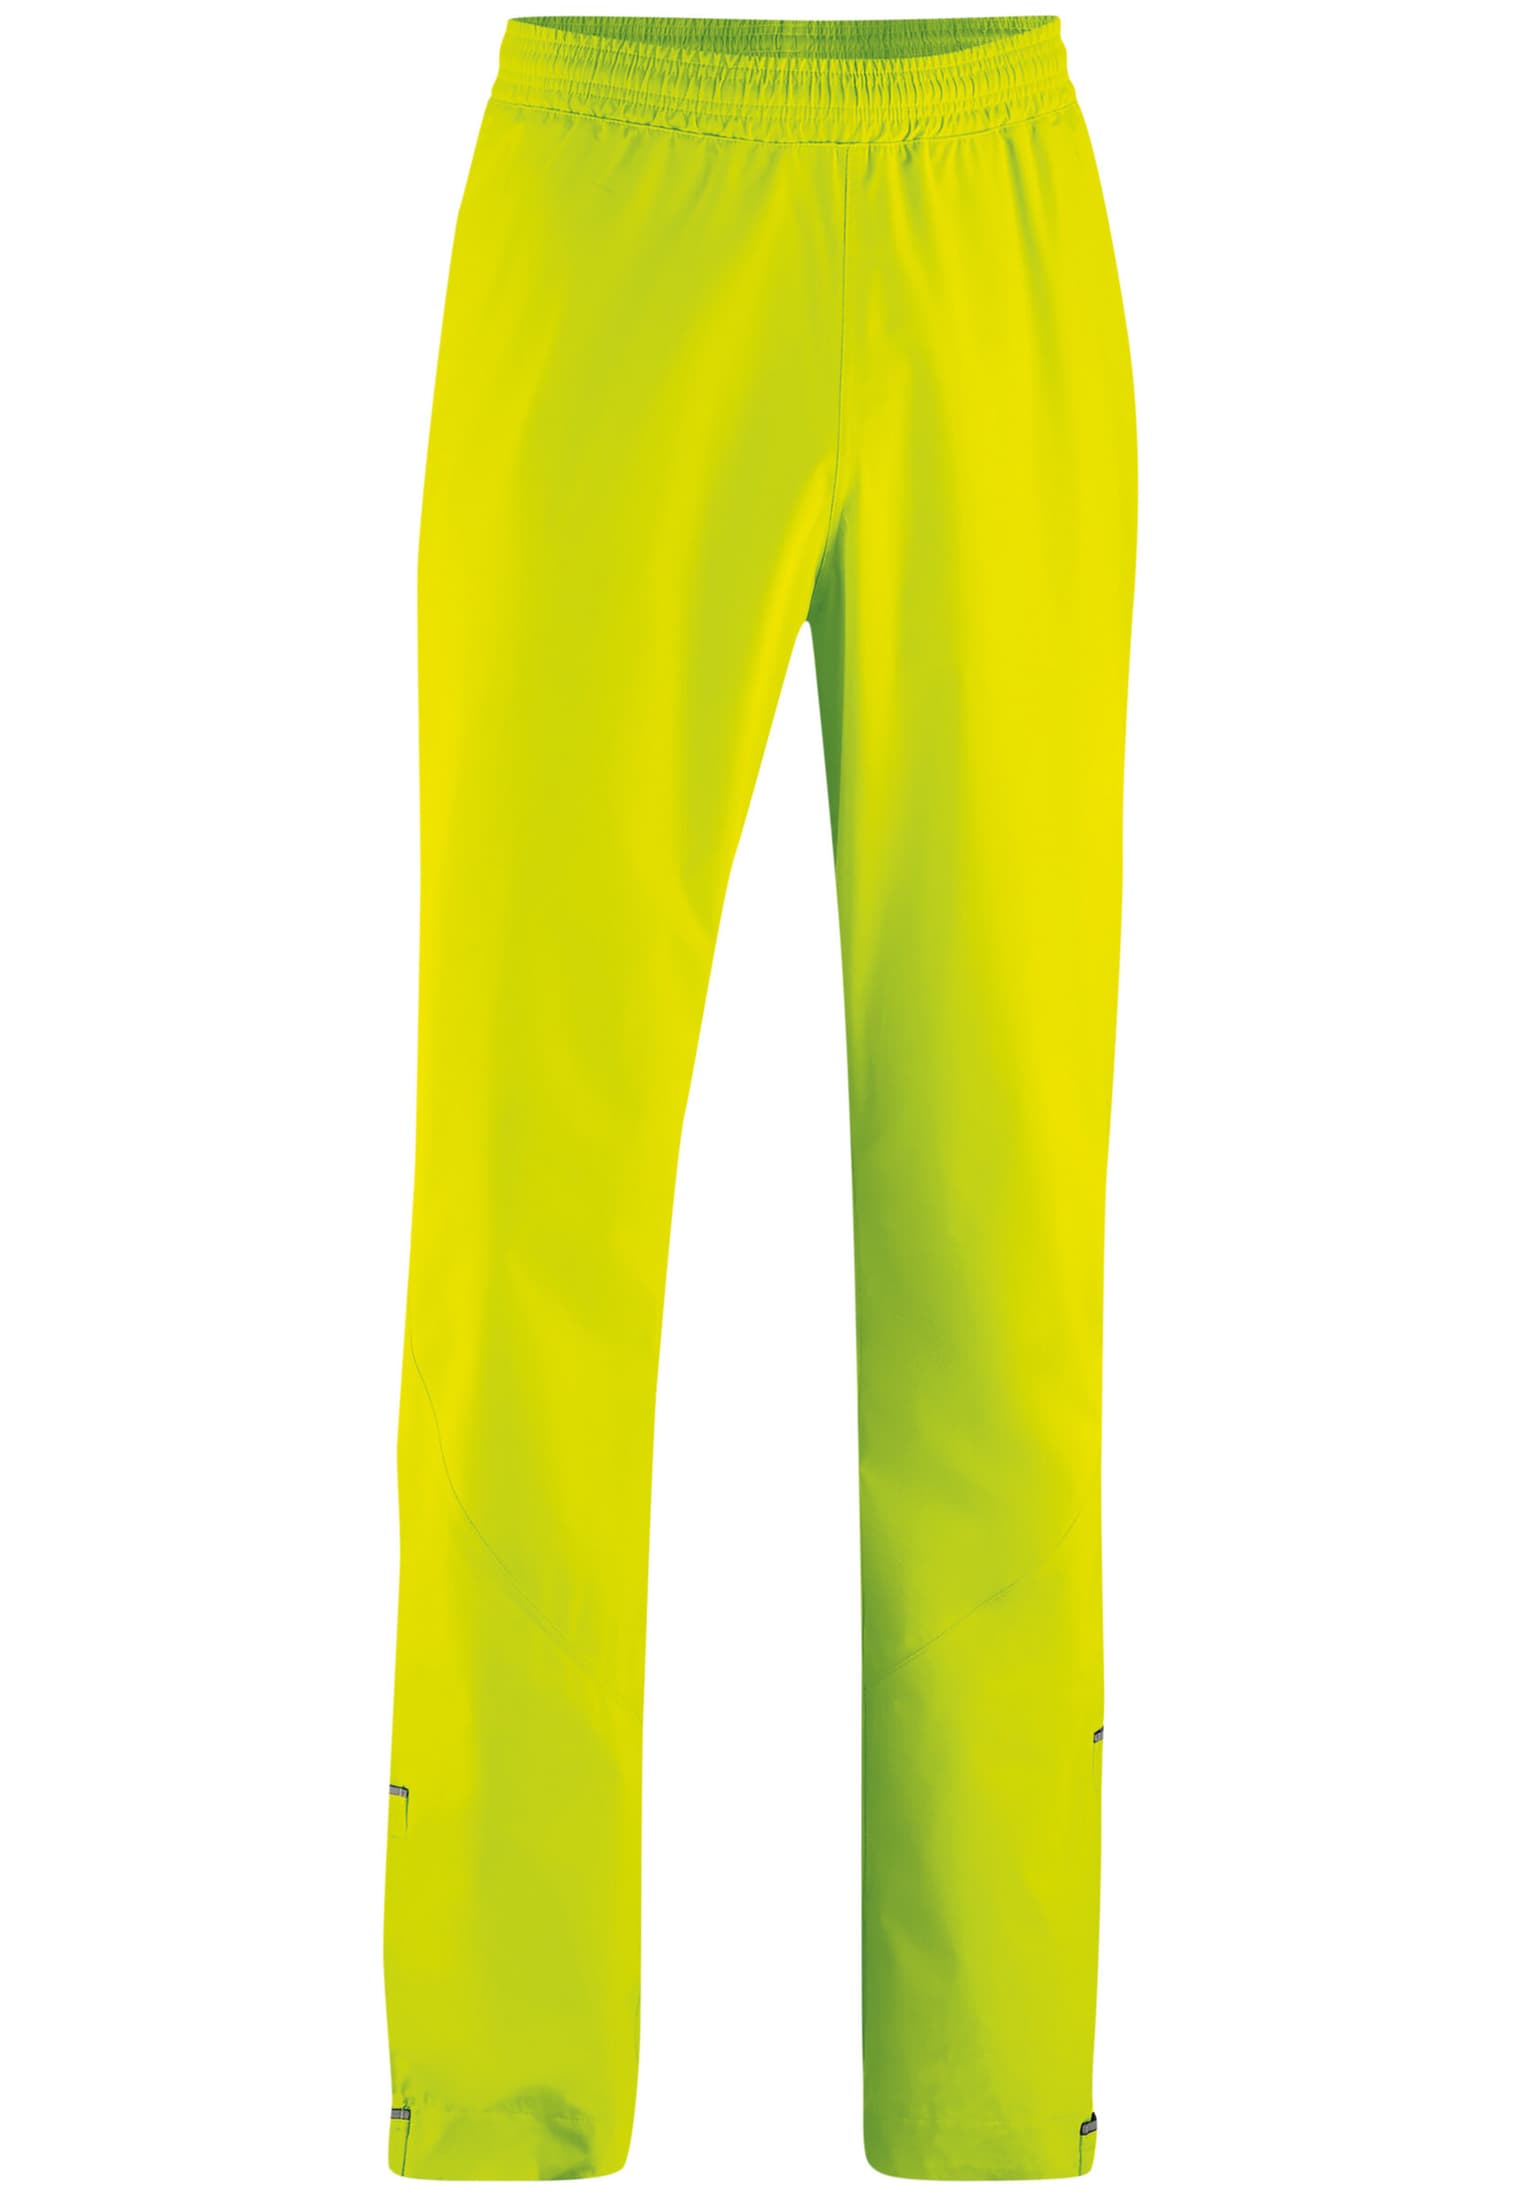 Gonso Gonso Nandro Pantalon de vélo jaune-neon 1